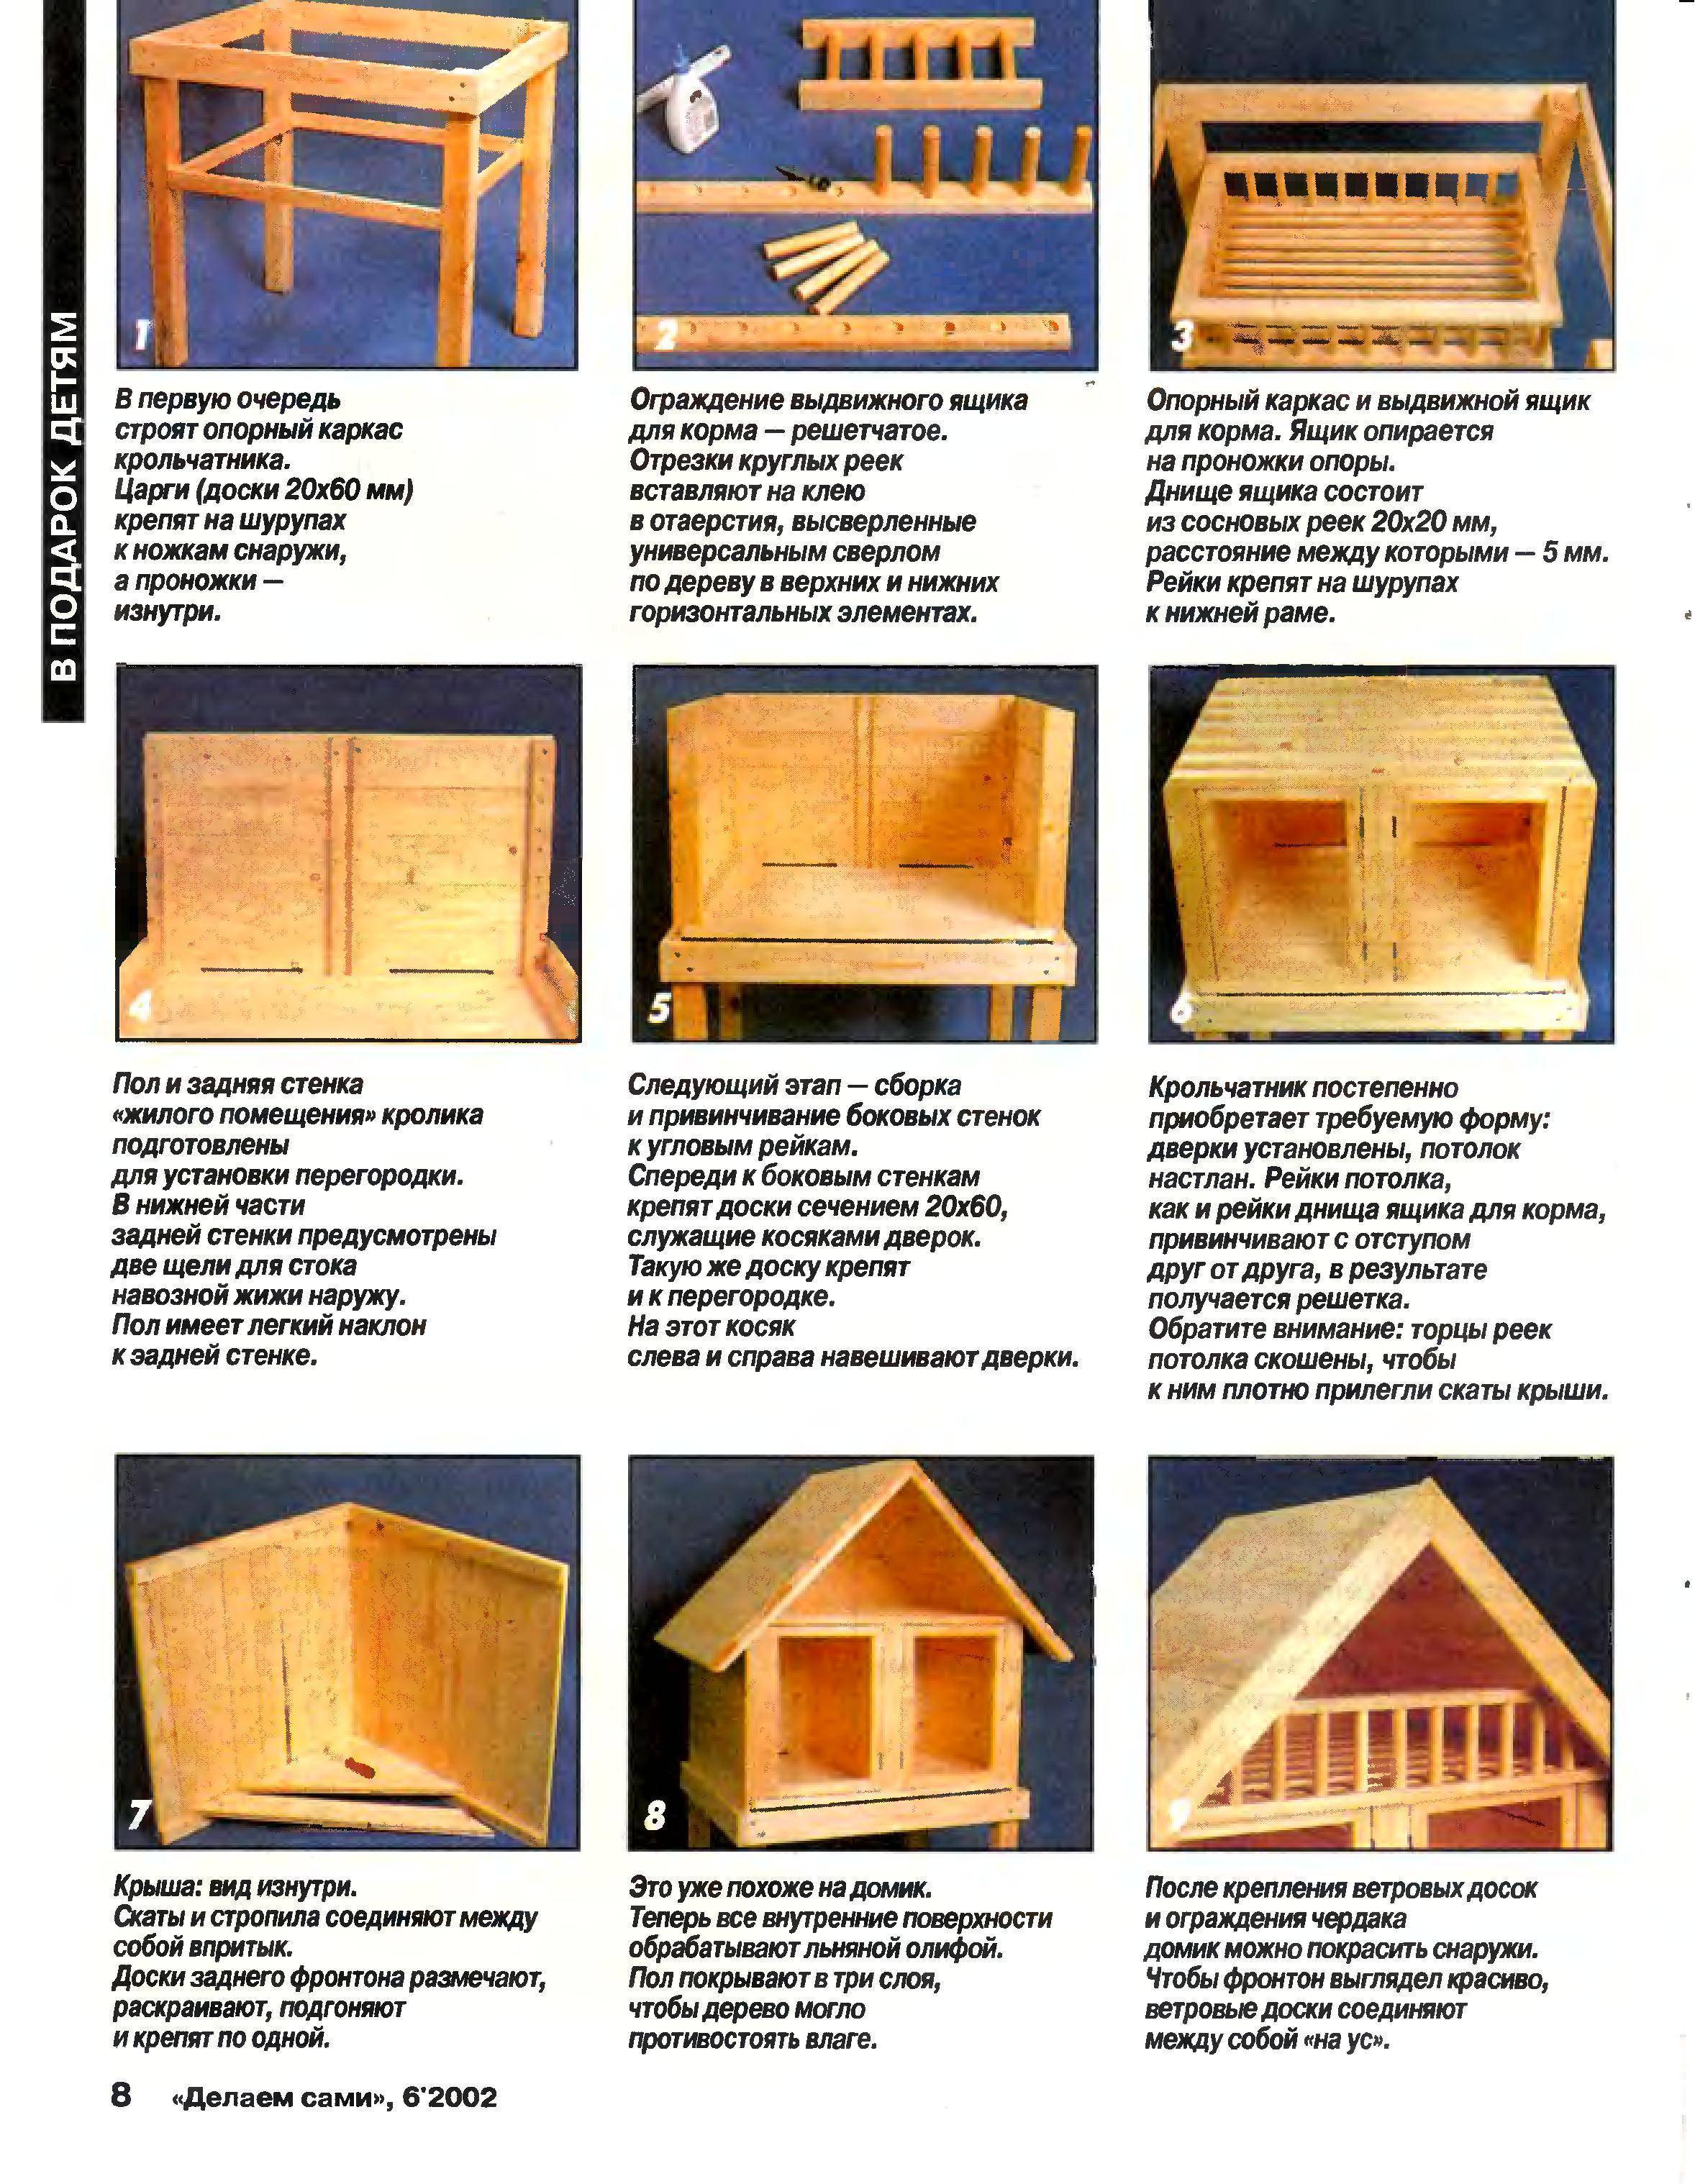 Домик для кролика своими руками. инструкция изготовления деревянного дома для декоративных питомцев в домашних условиях. делаем место грызуну